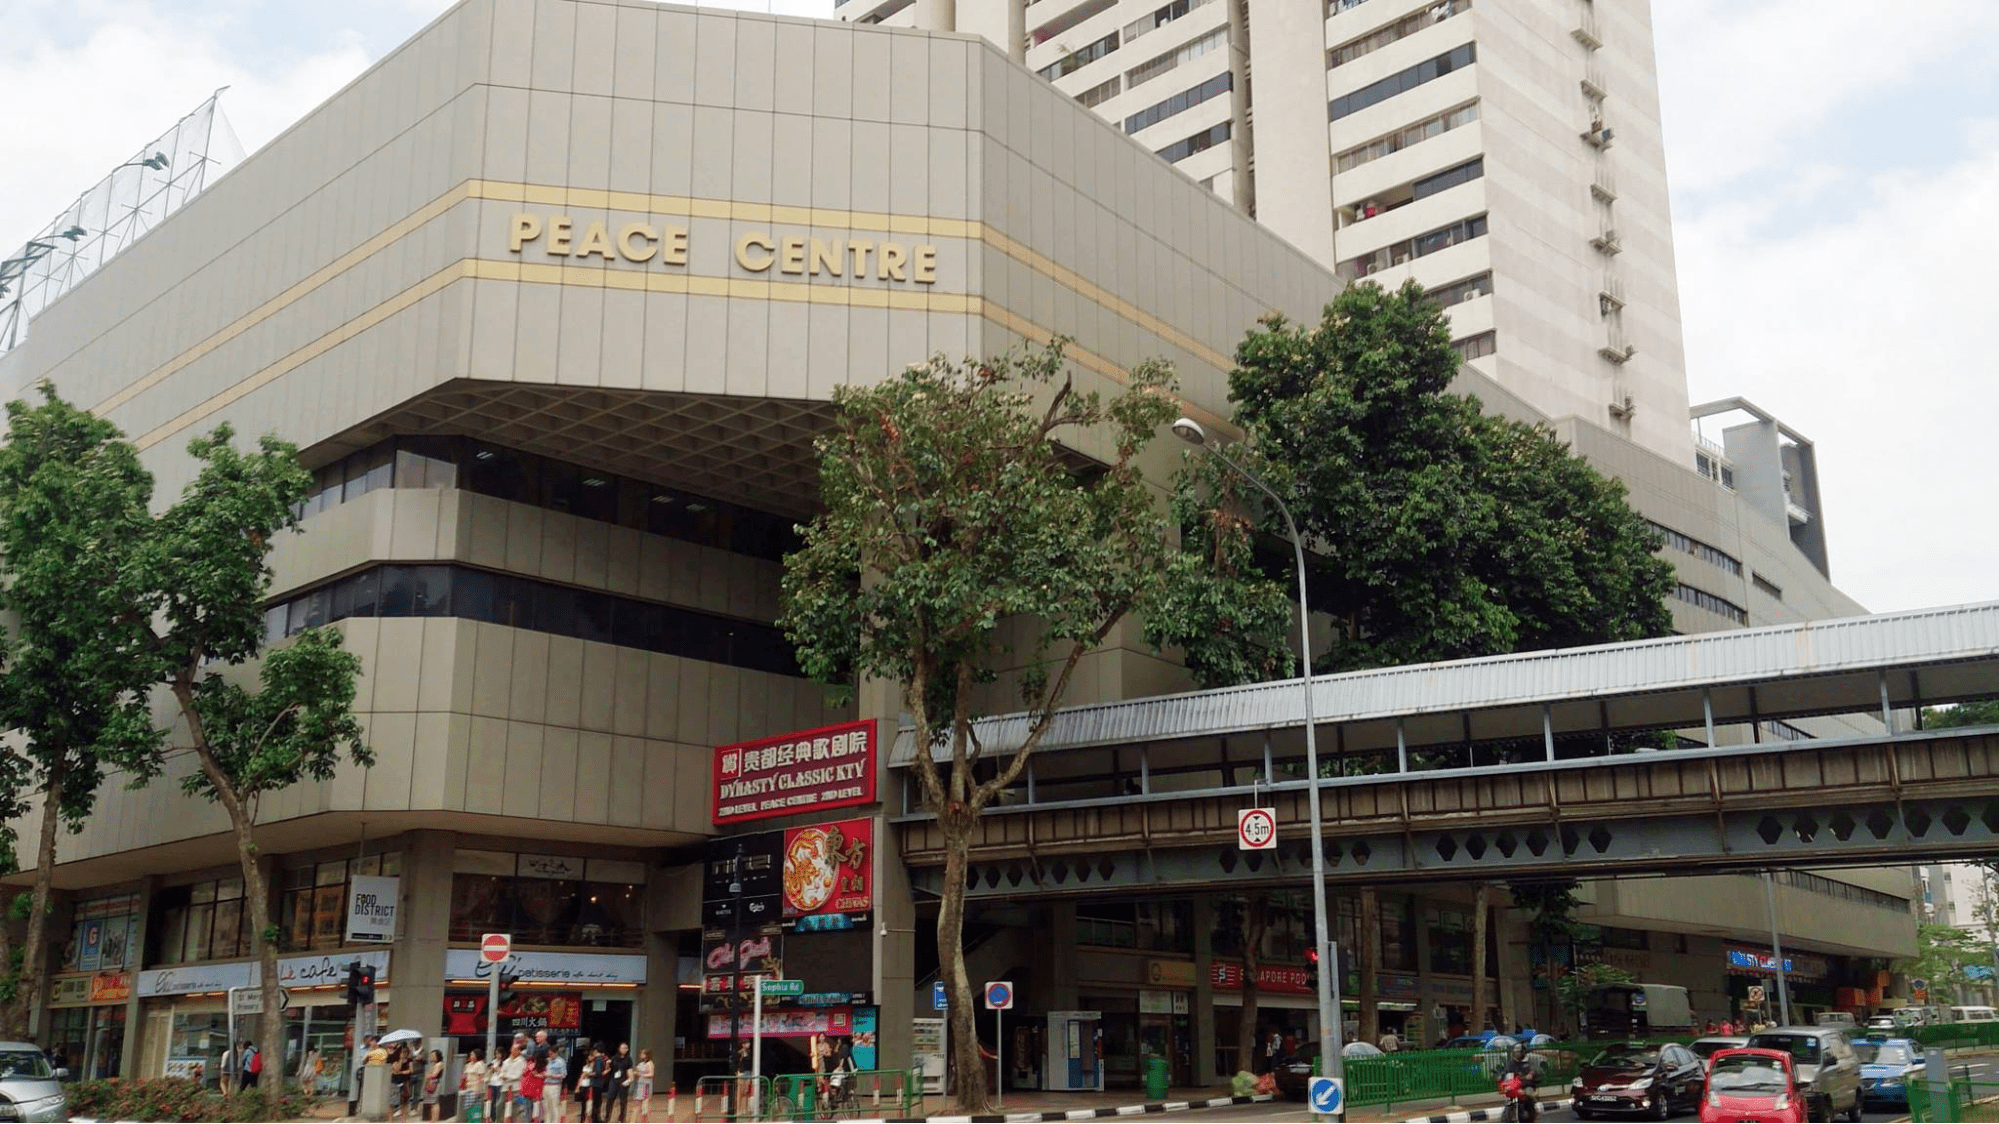 Defunct Singapore malls - Peace Centre